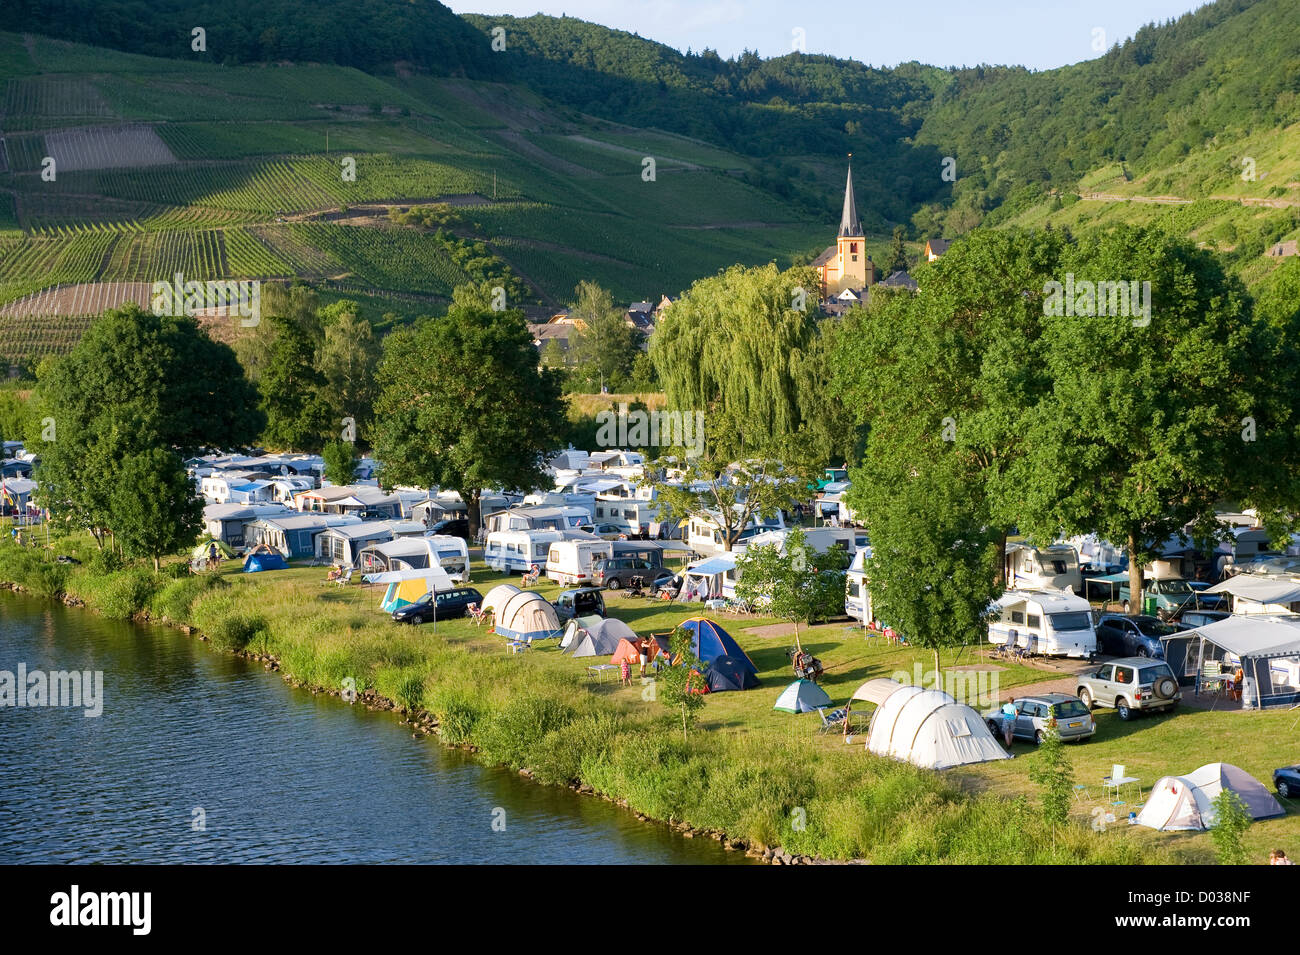 Camping am Ufer der Mosel in Deutschland Stockfotografie - Alamy